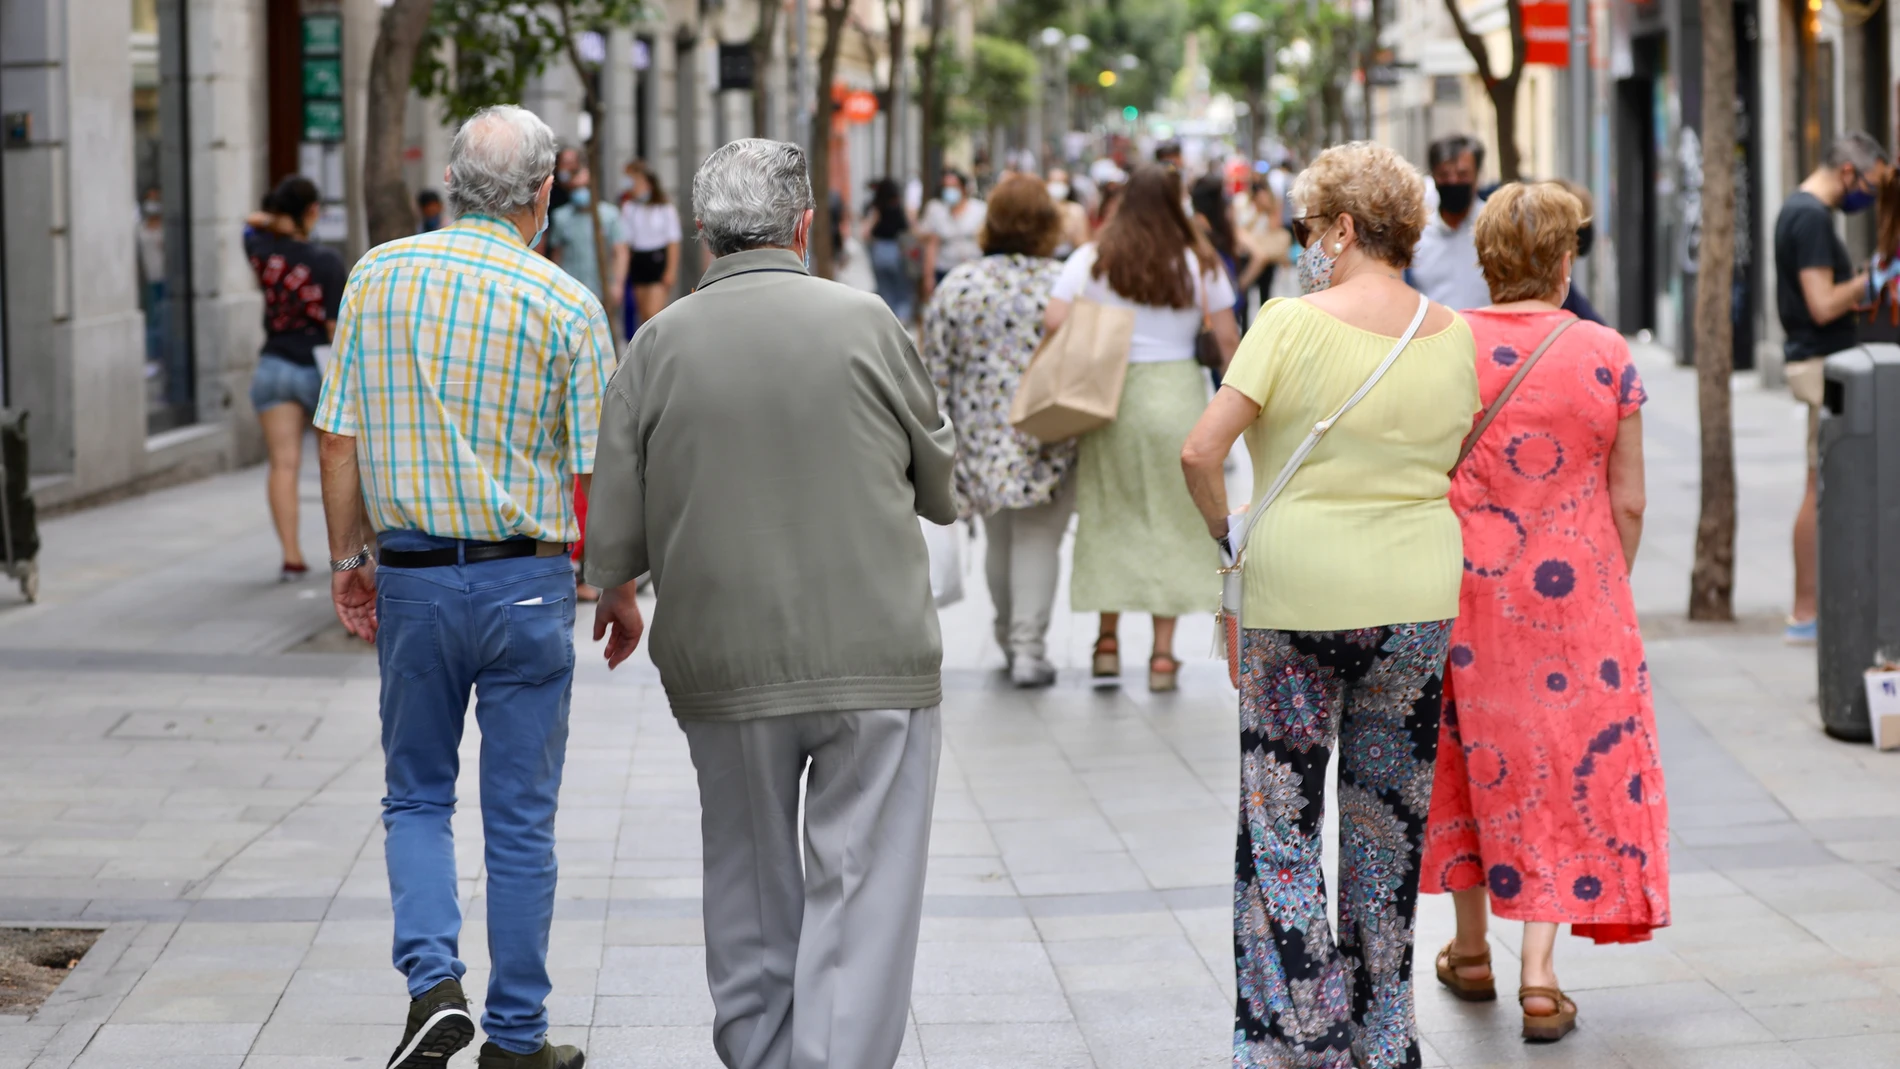 Jubilados paseando por las calles de Madrid